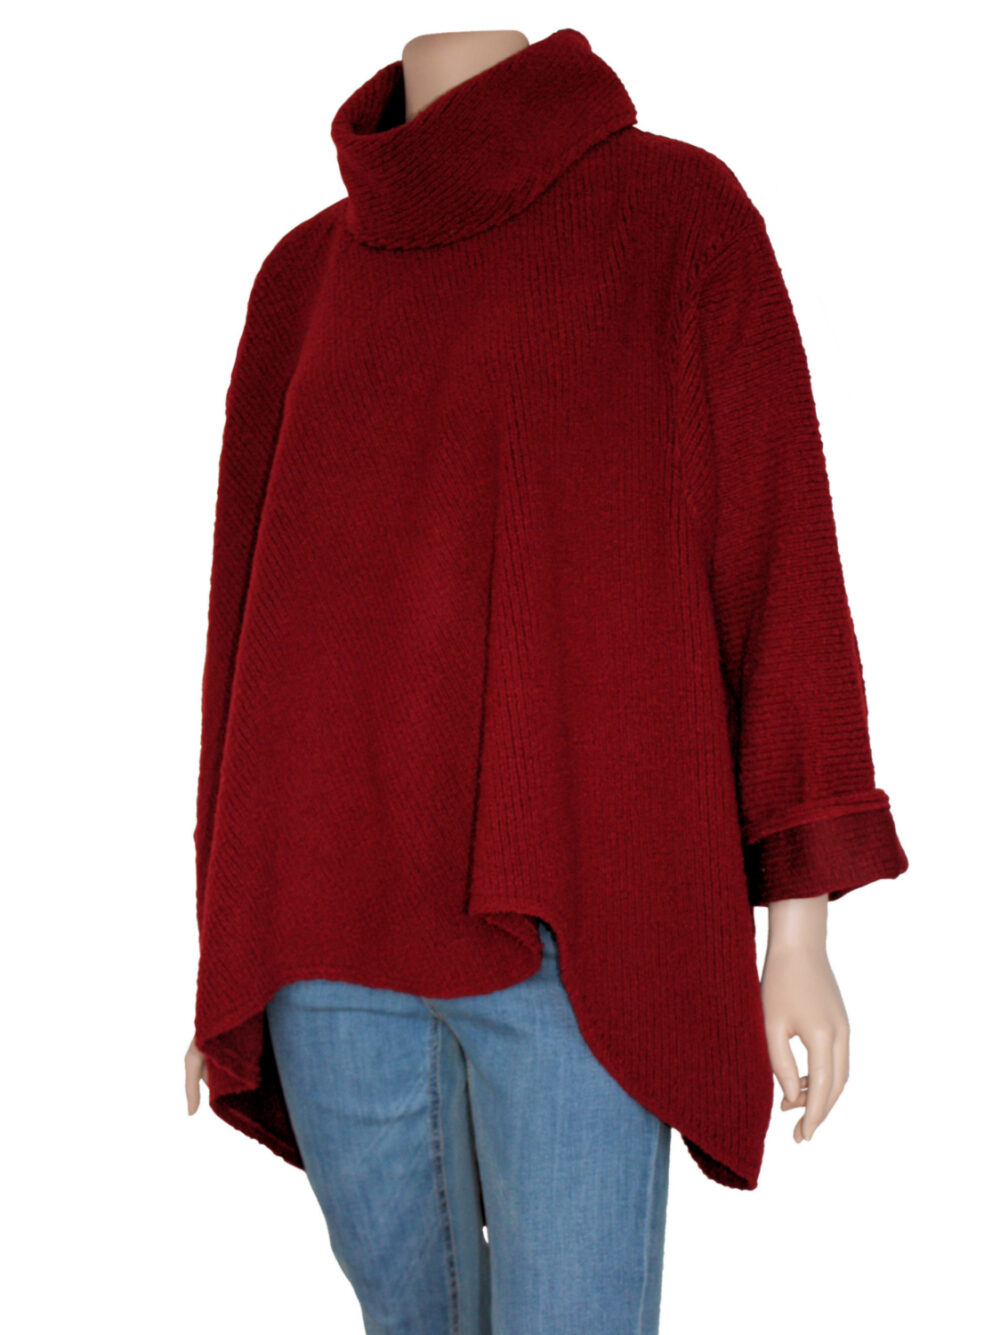 Warme trui voor grote maten dames, gemaakt van een bordeaux rood breisel.